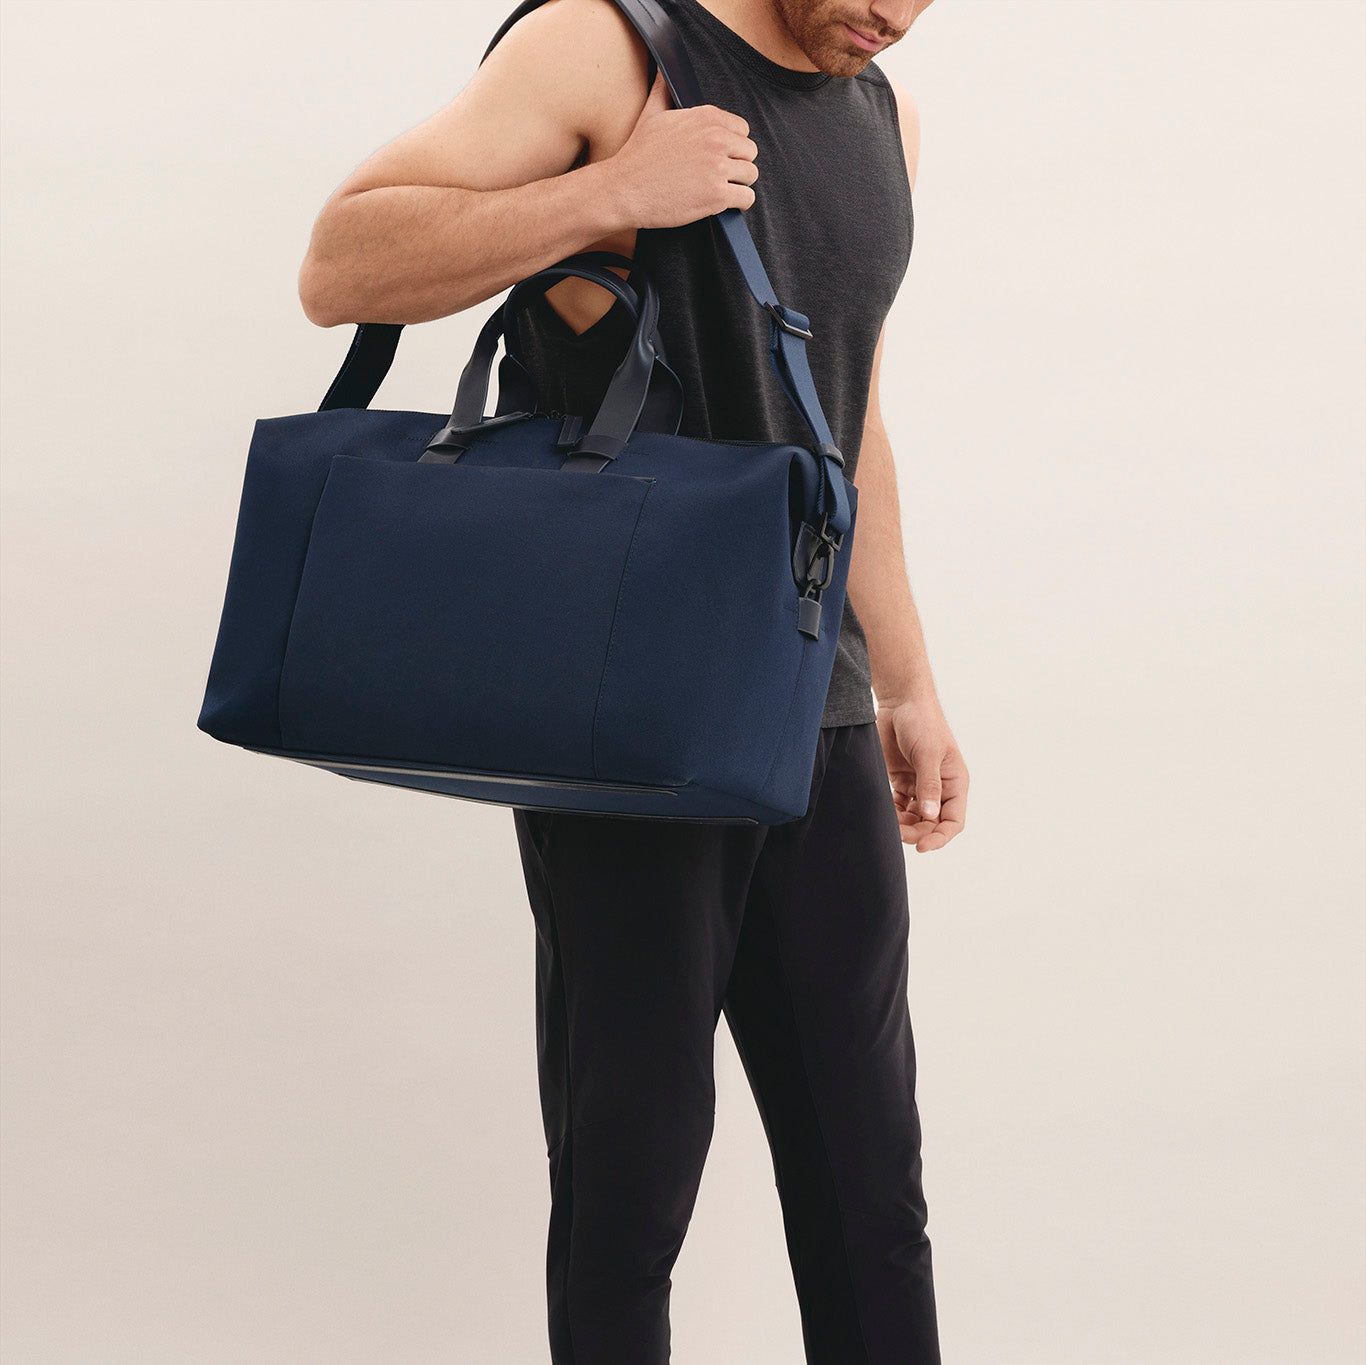 Troubadour Weekender, Weekend Bag, Lightweight Waterproof Fabric